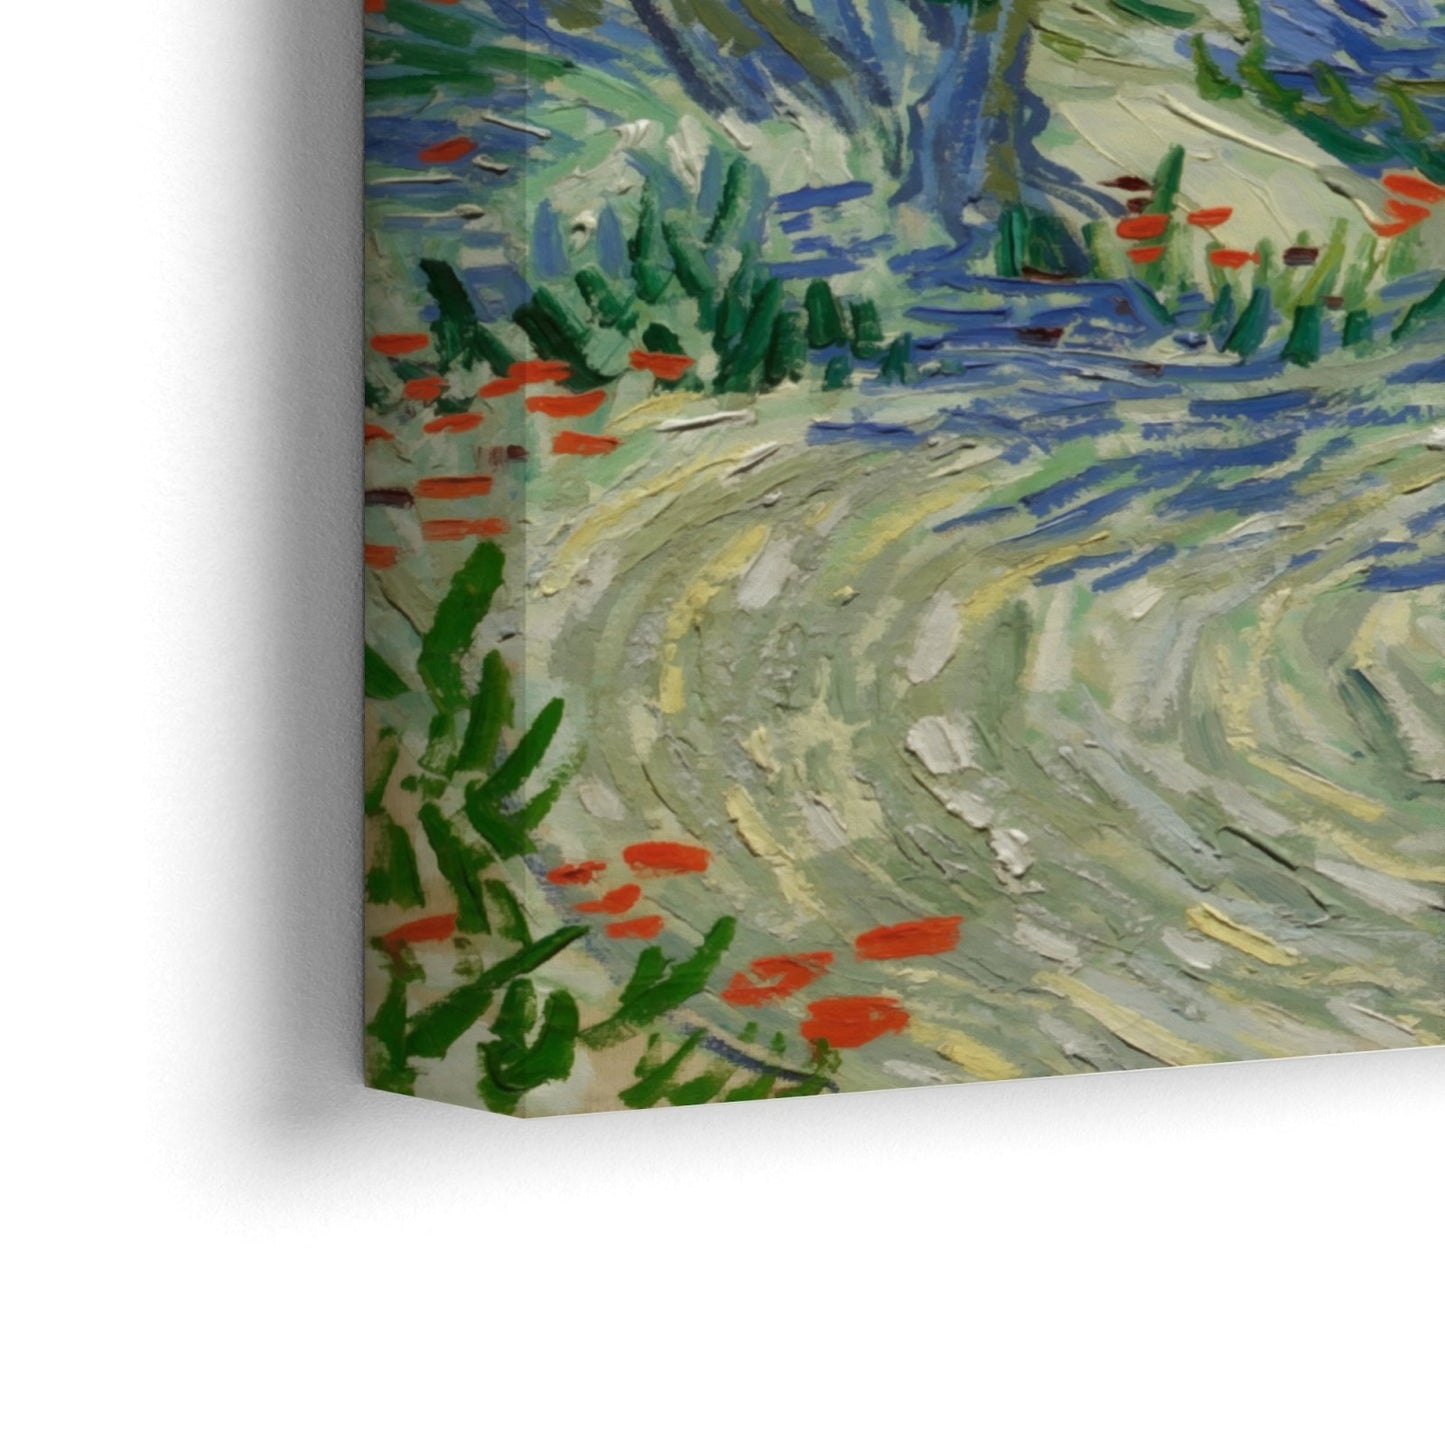 Olive Orchard 1889, Vincent Van Gogh